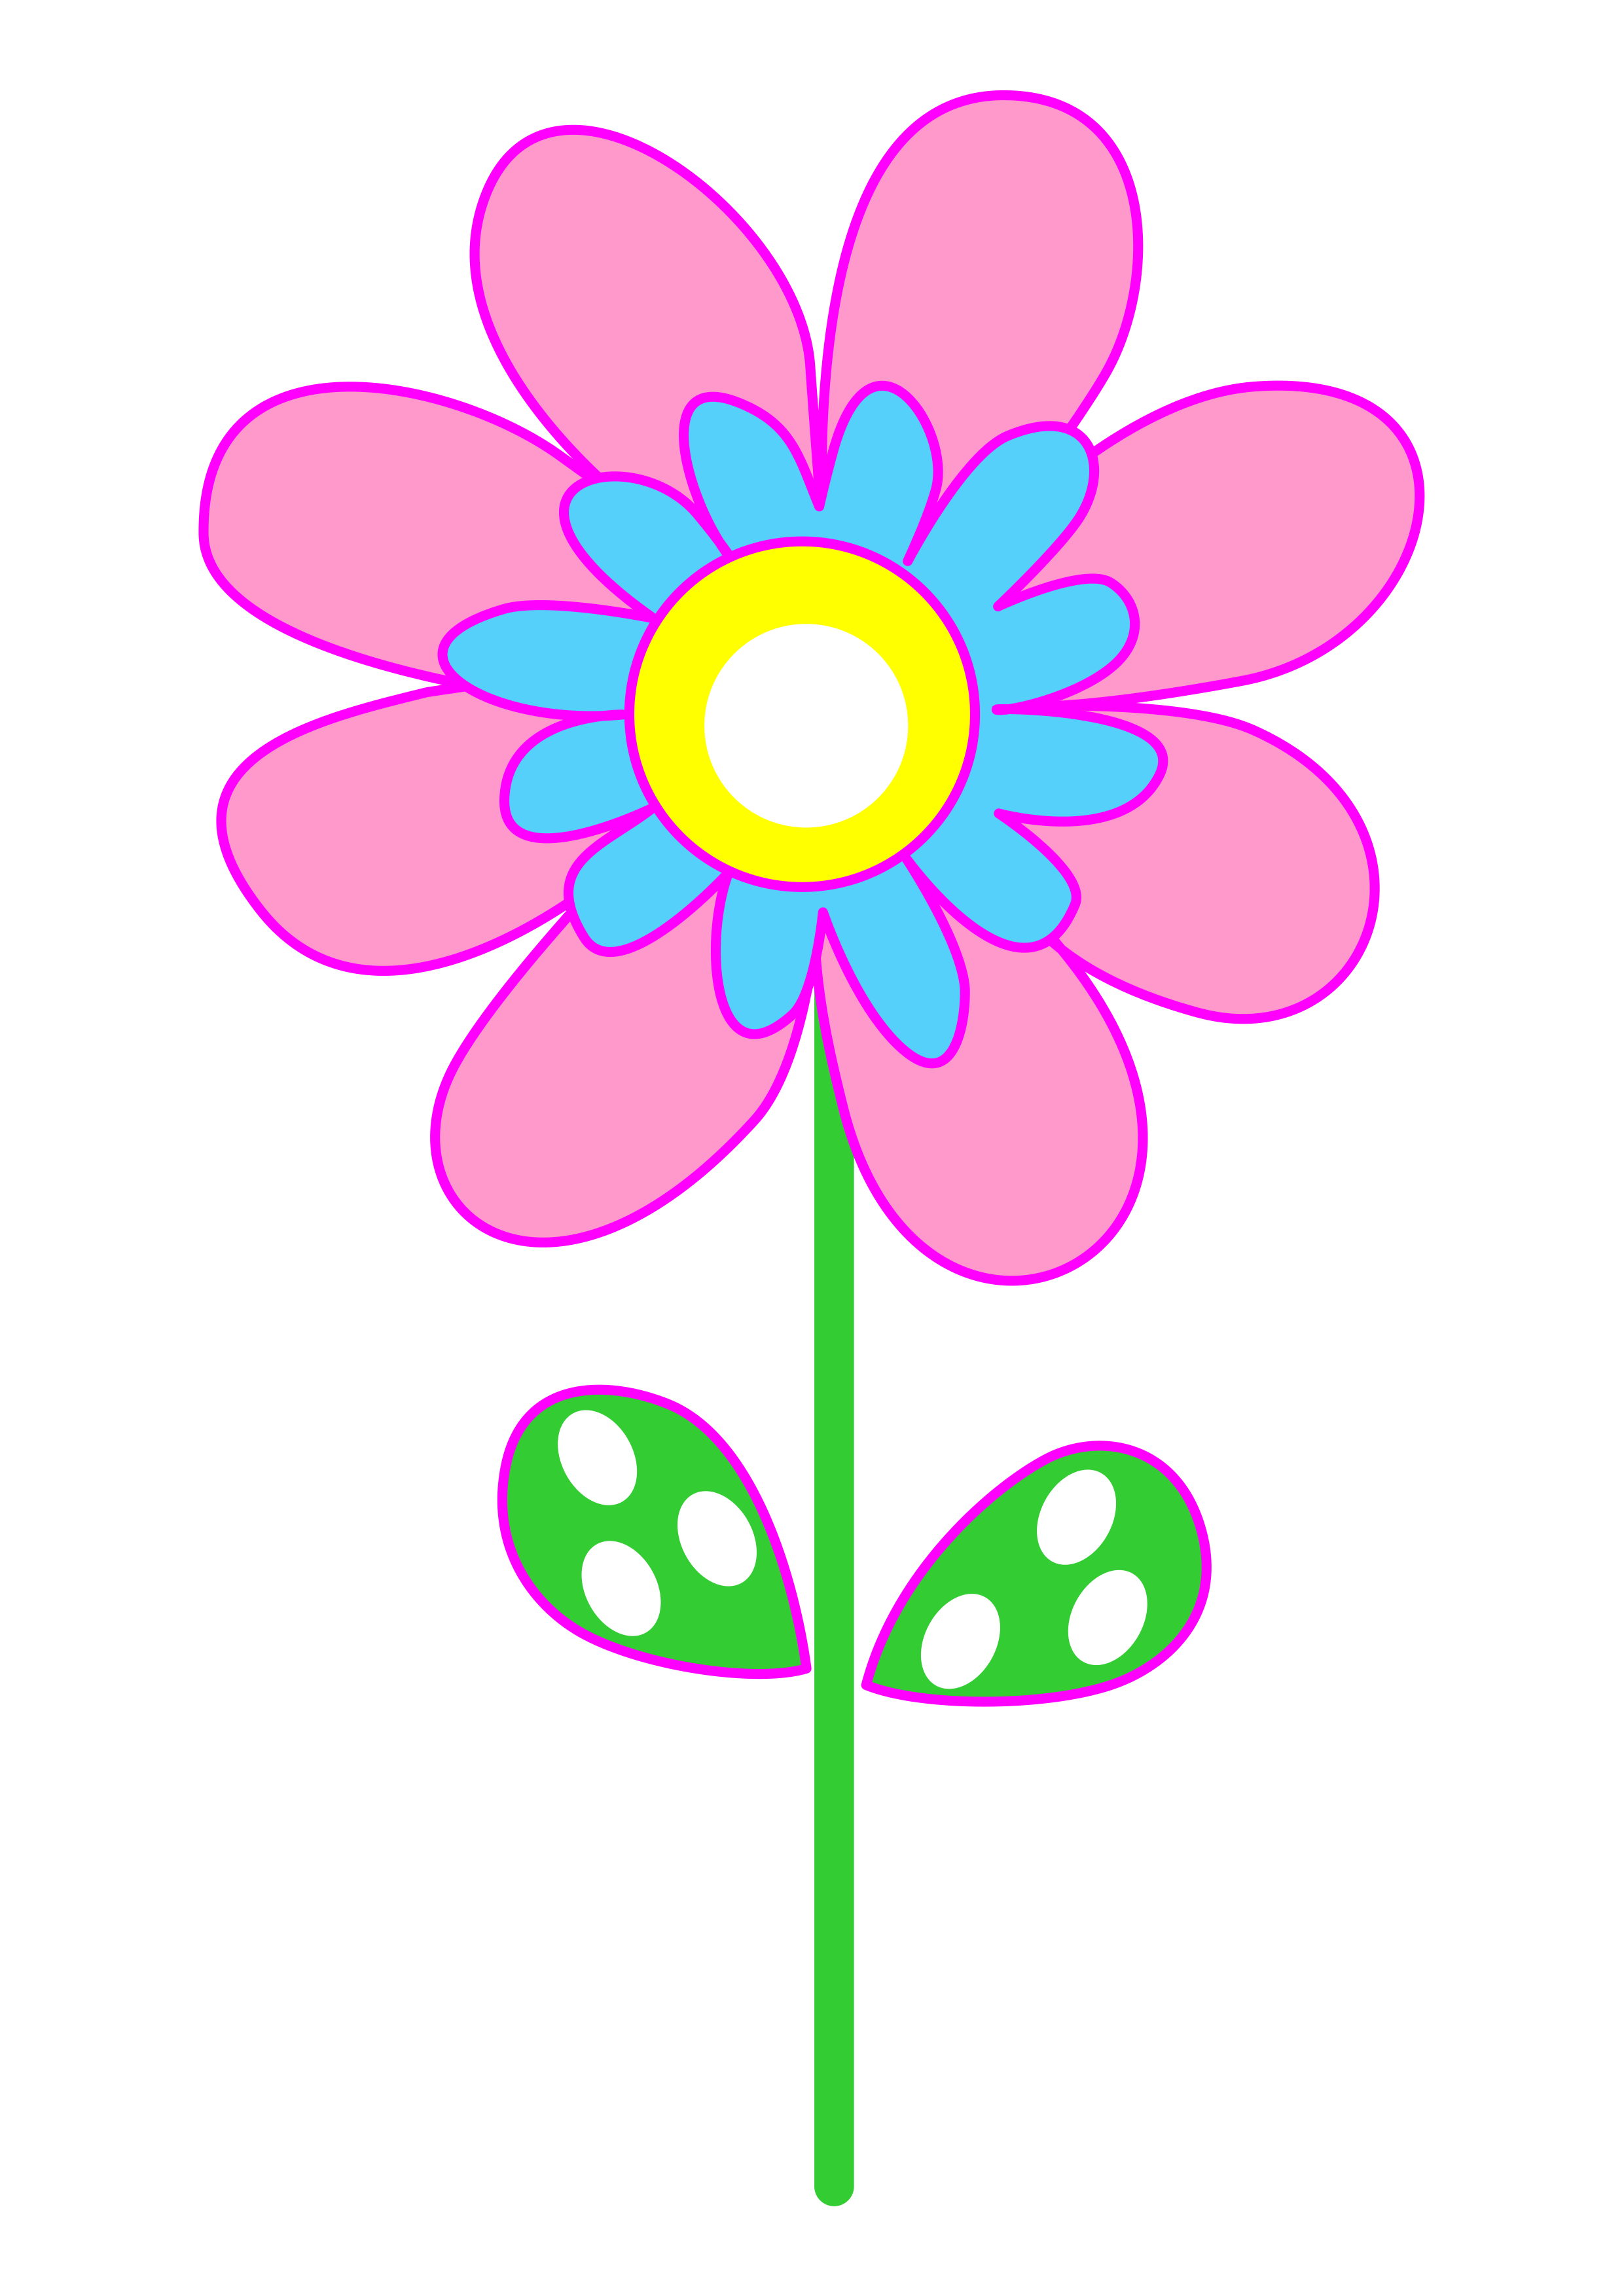 Flor azul e rosa desenho simples jardim encantado imagem sem fundo artigos de papelaria arquivo de recorte folhas png